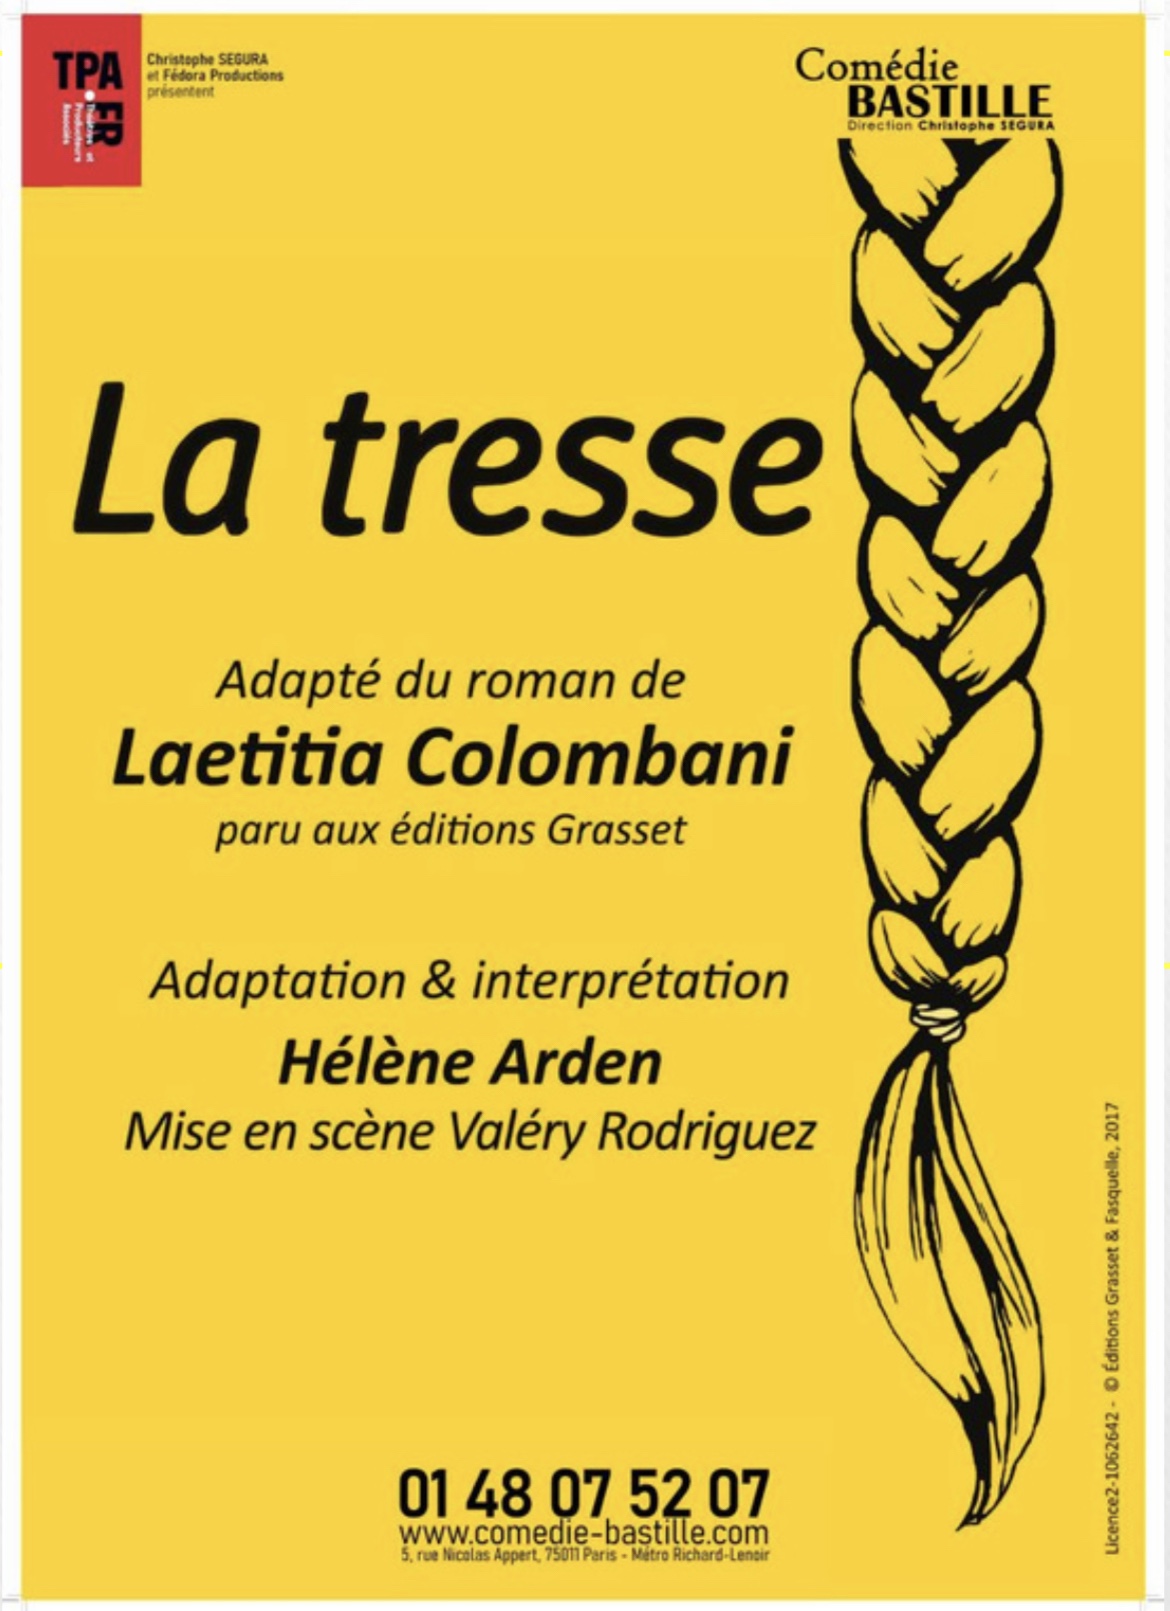 La Tresse » : comment Laetitia Colombani a adapté son roman best